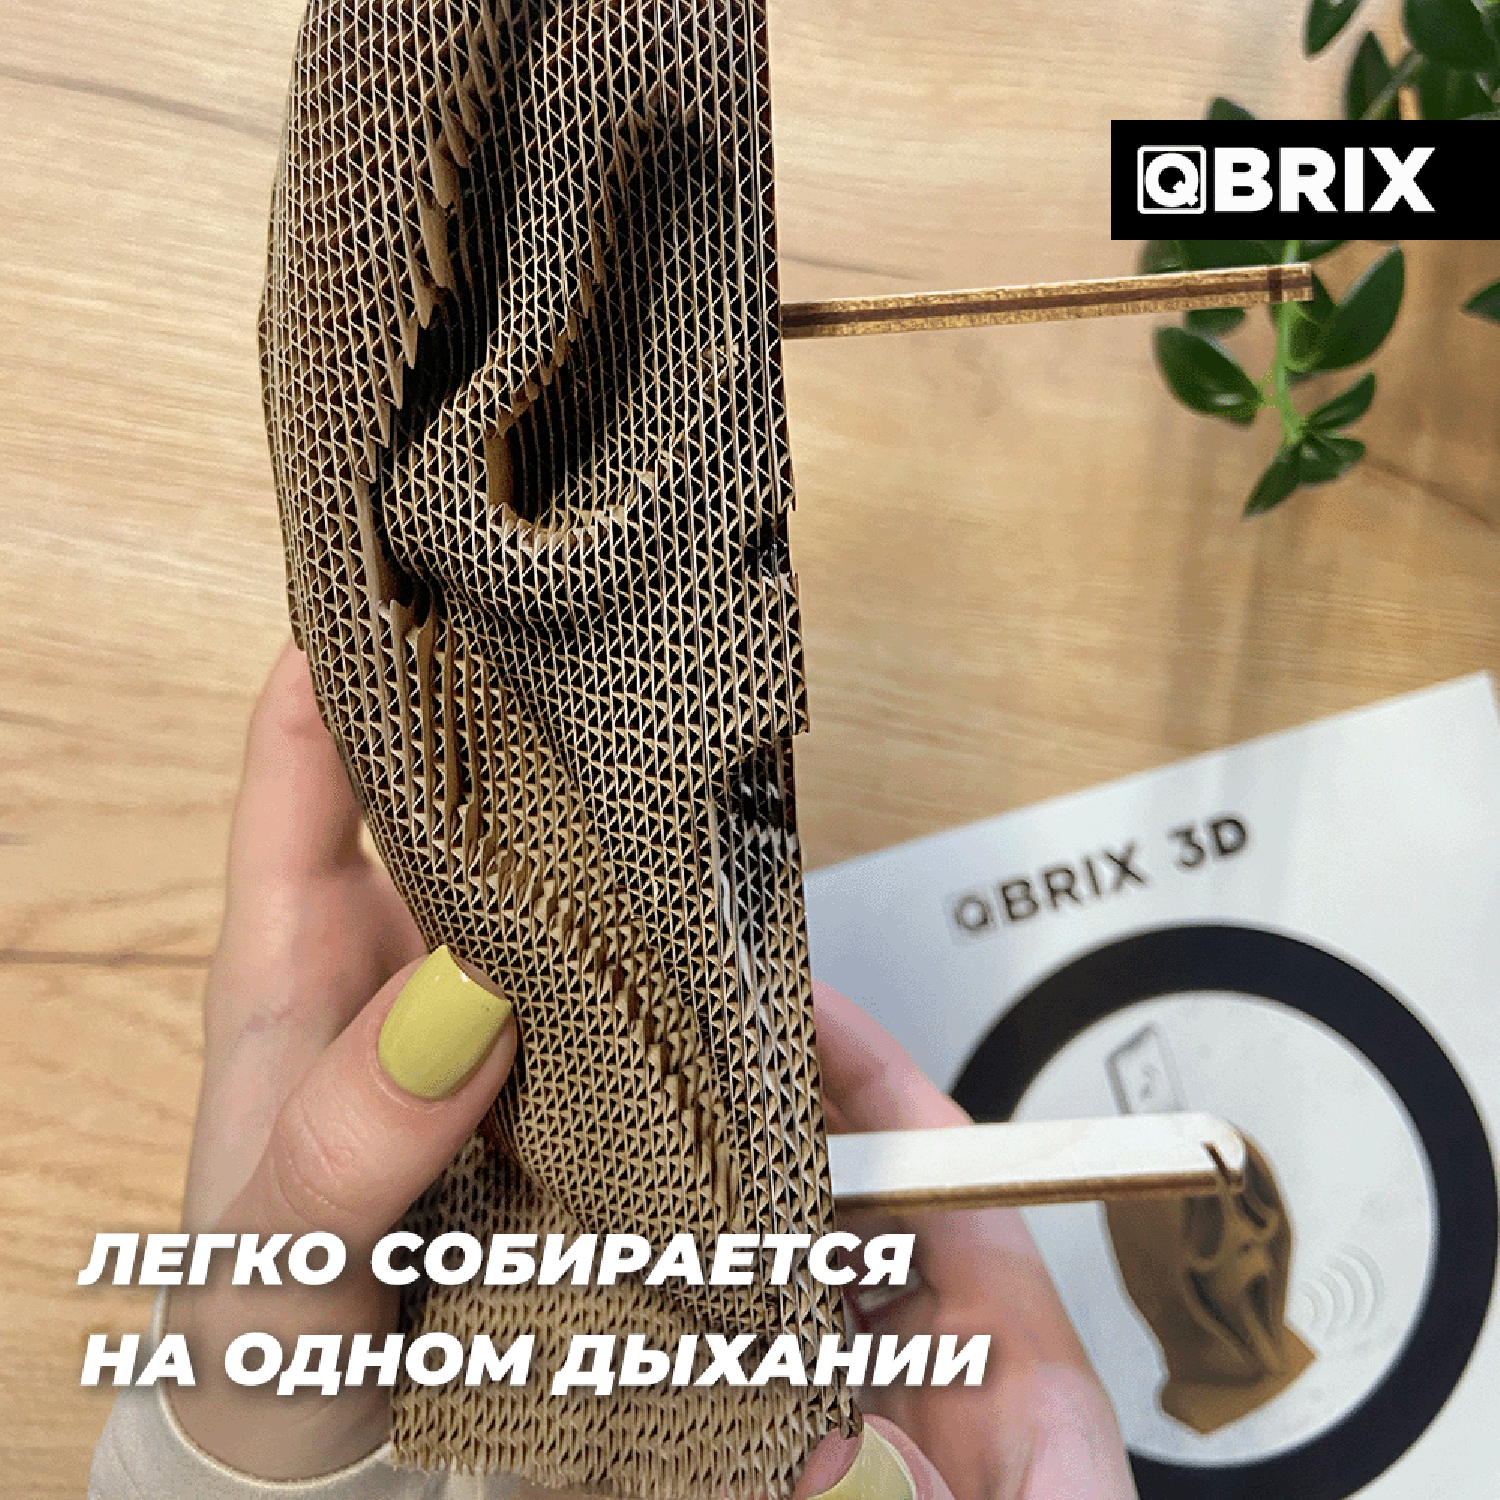 Конструктор QBRIX 3D картонный Крик души 20009 20009 - фото 7